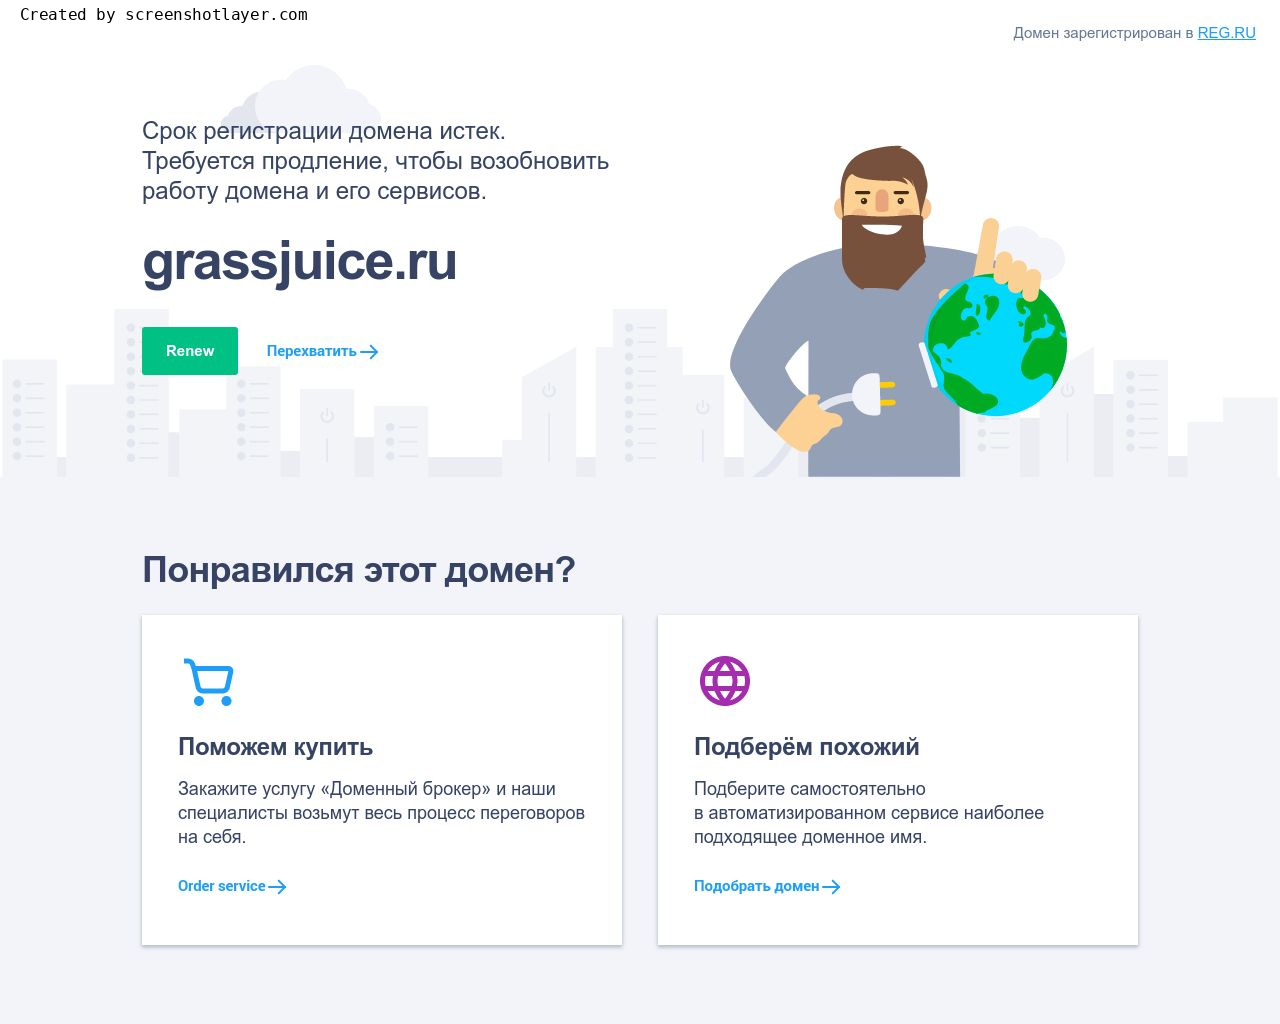 Изображение сайта grassjuice.ru в разрешении 1280x1024